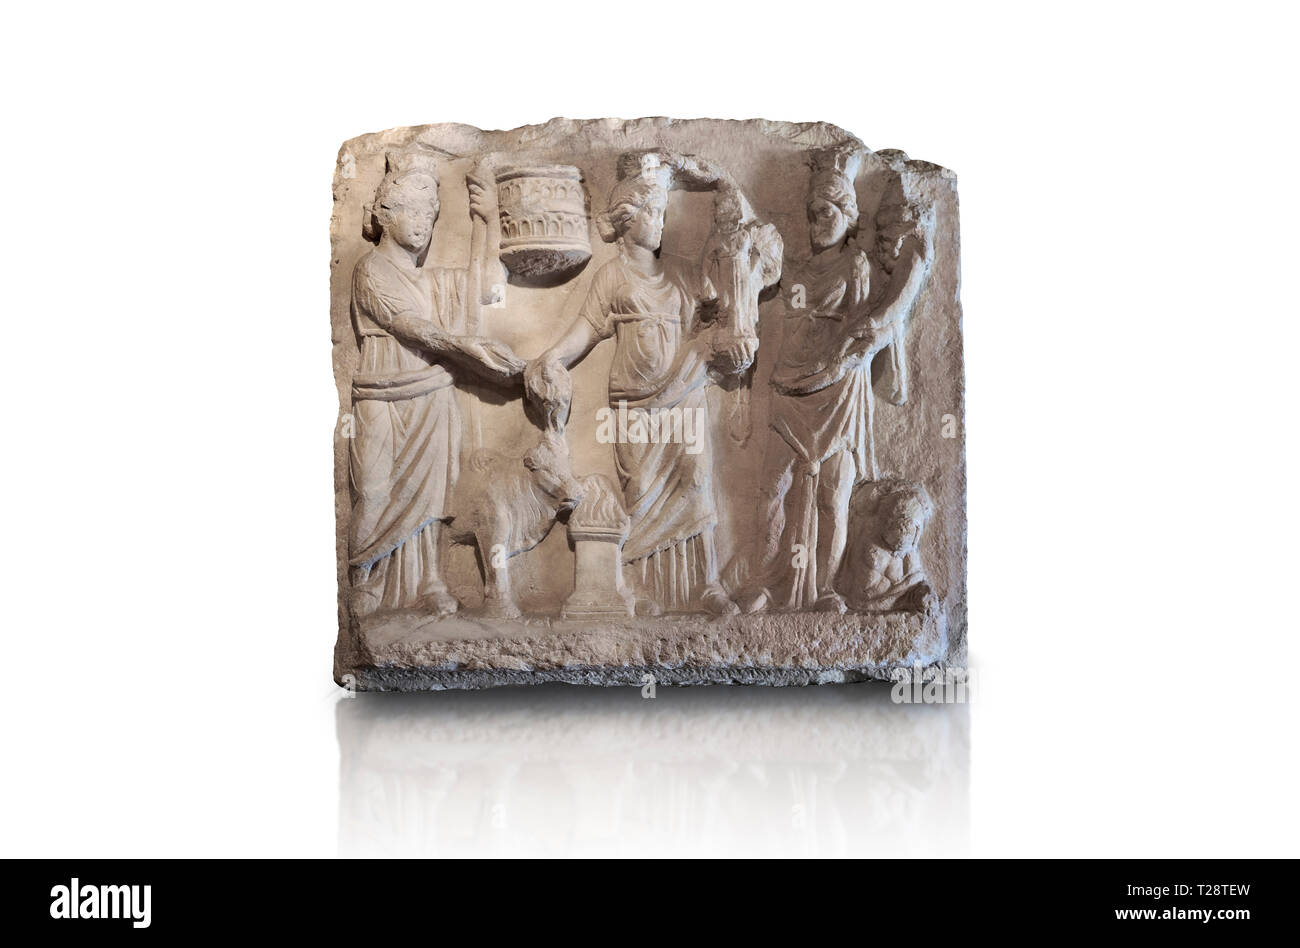 Sculpture relief romain du couronnement d'Hiérapolis. 2ème ANNONCE de siècle, romaine Hierapolis Theatre.. Musée Archéologique de Hierapolis, la Turquie. Contre un w Banque D'Images